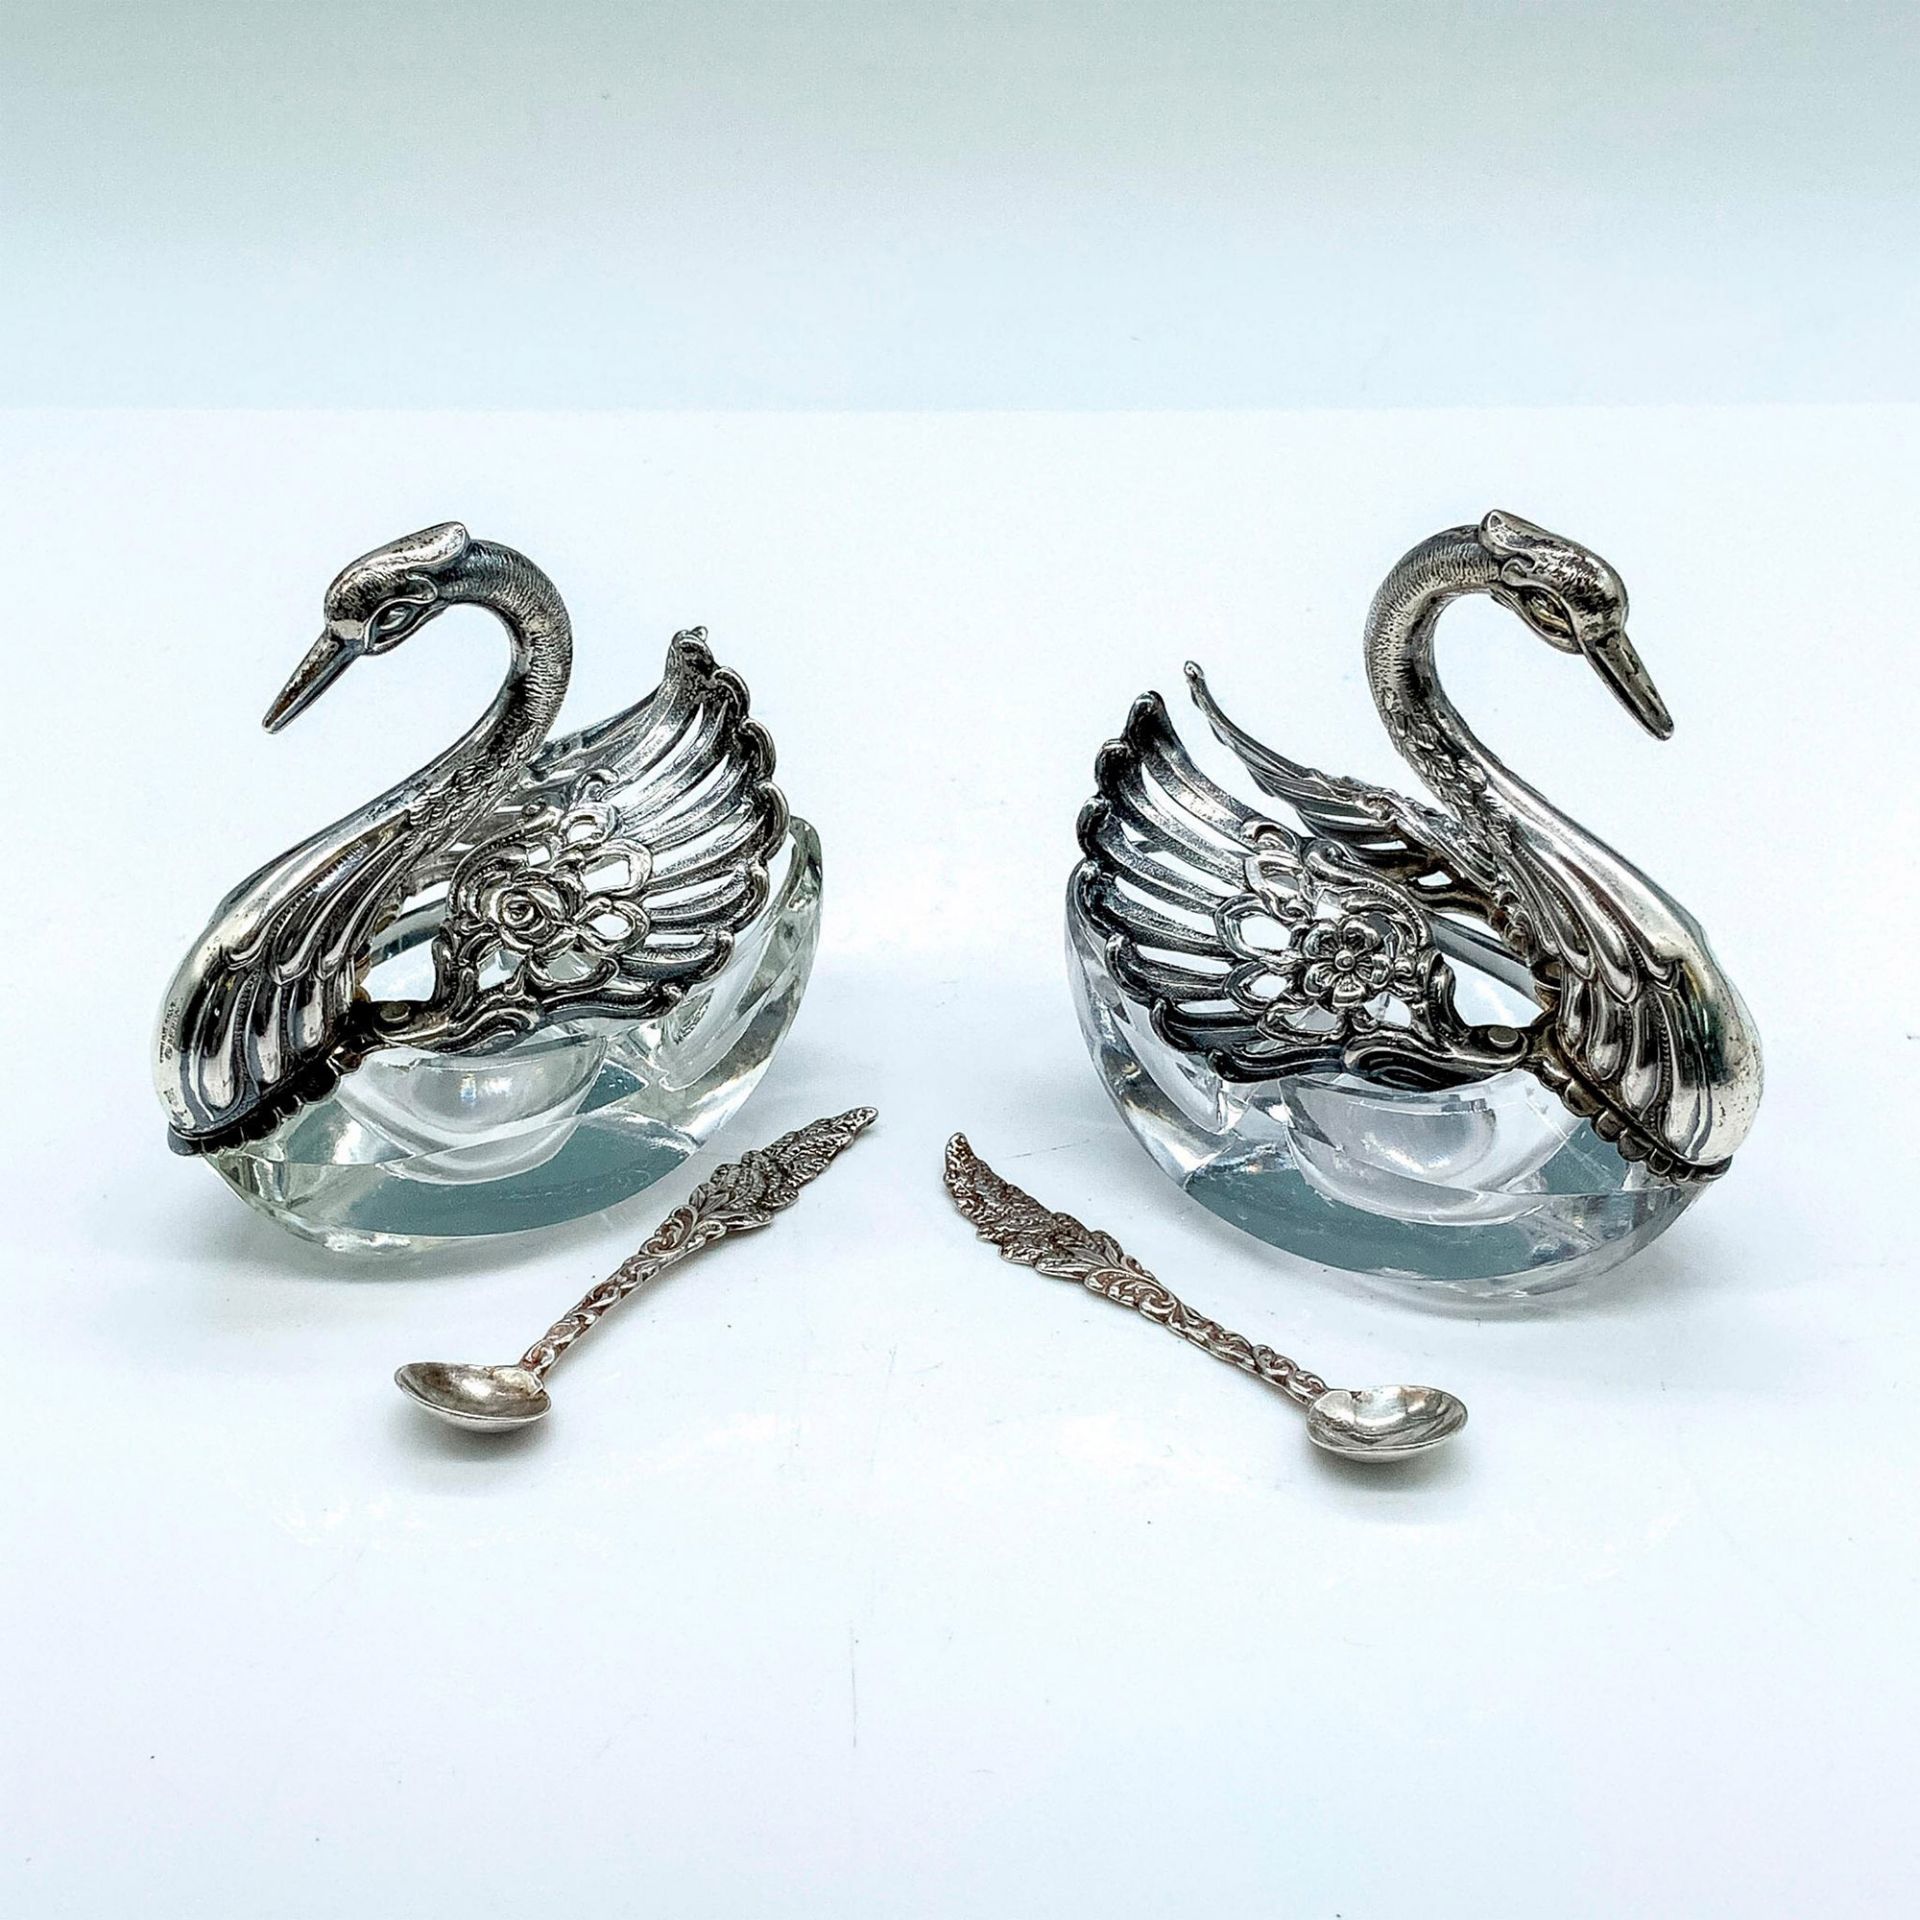 Pair of German Sterling Silver Swan Salt Cellars and Spoons